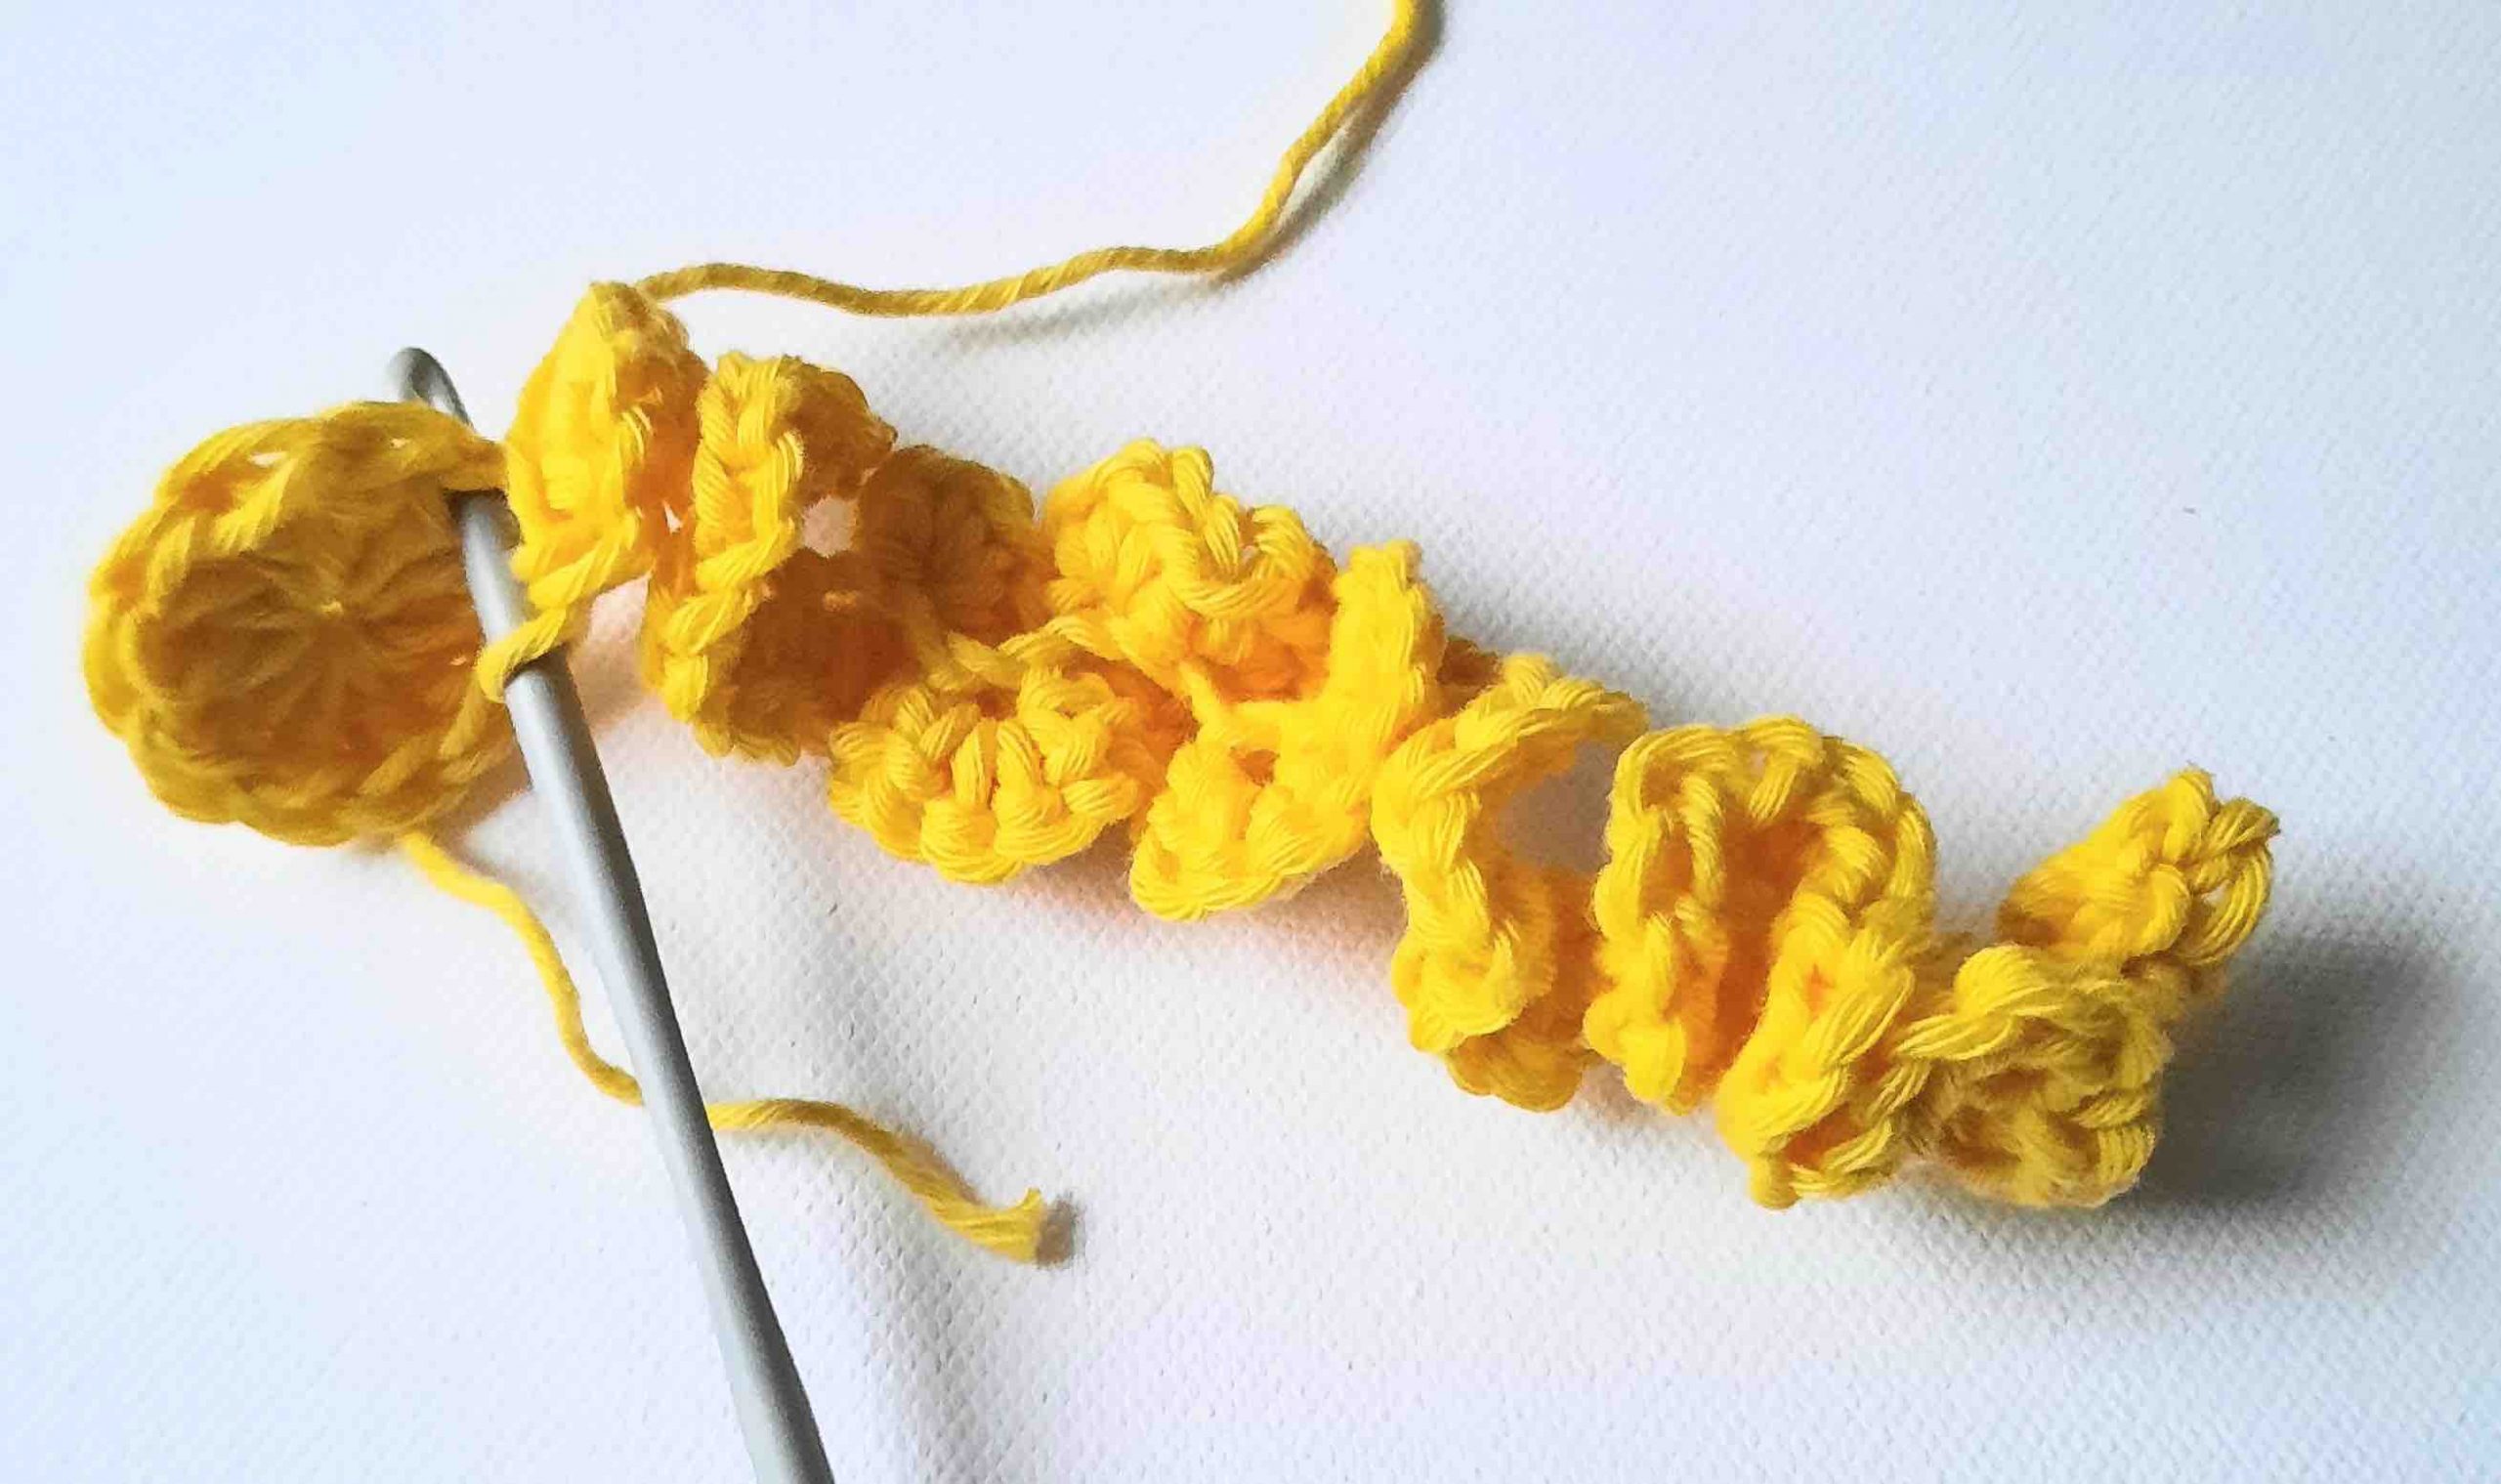 Bee worry worm crochet pattern free